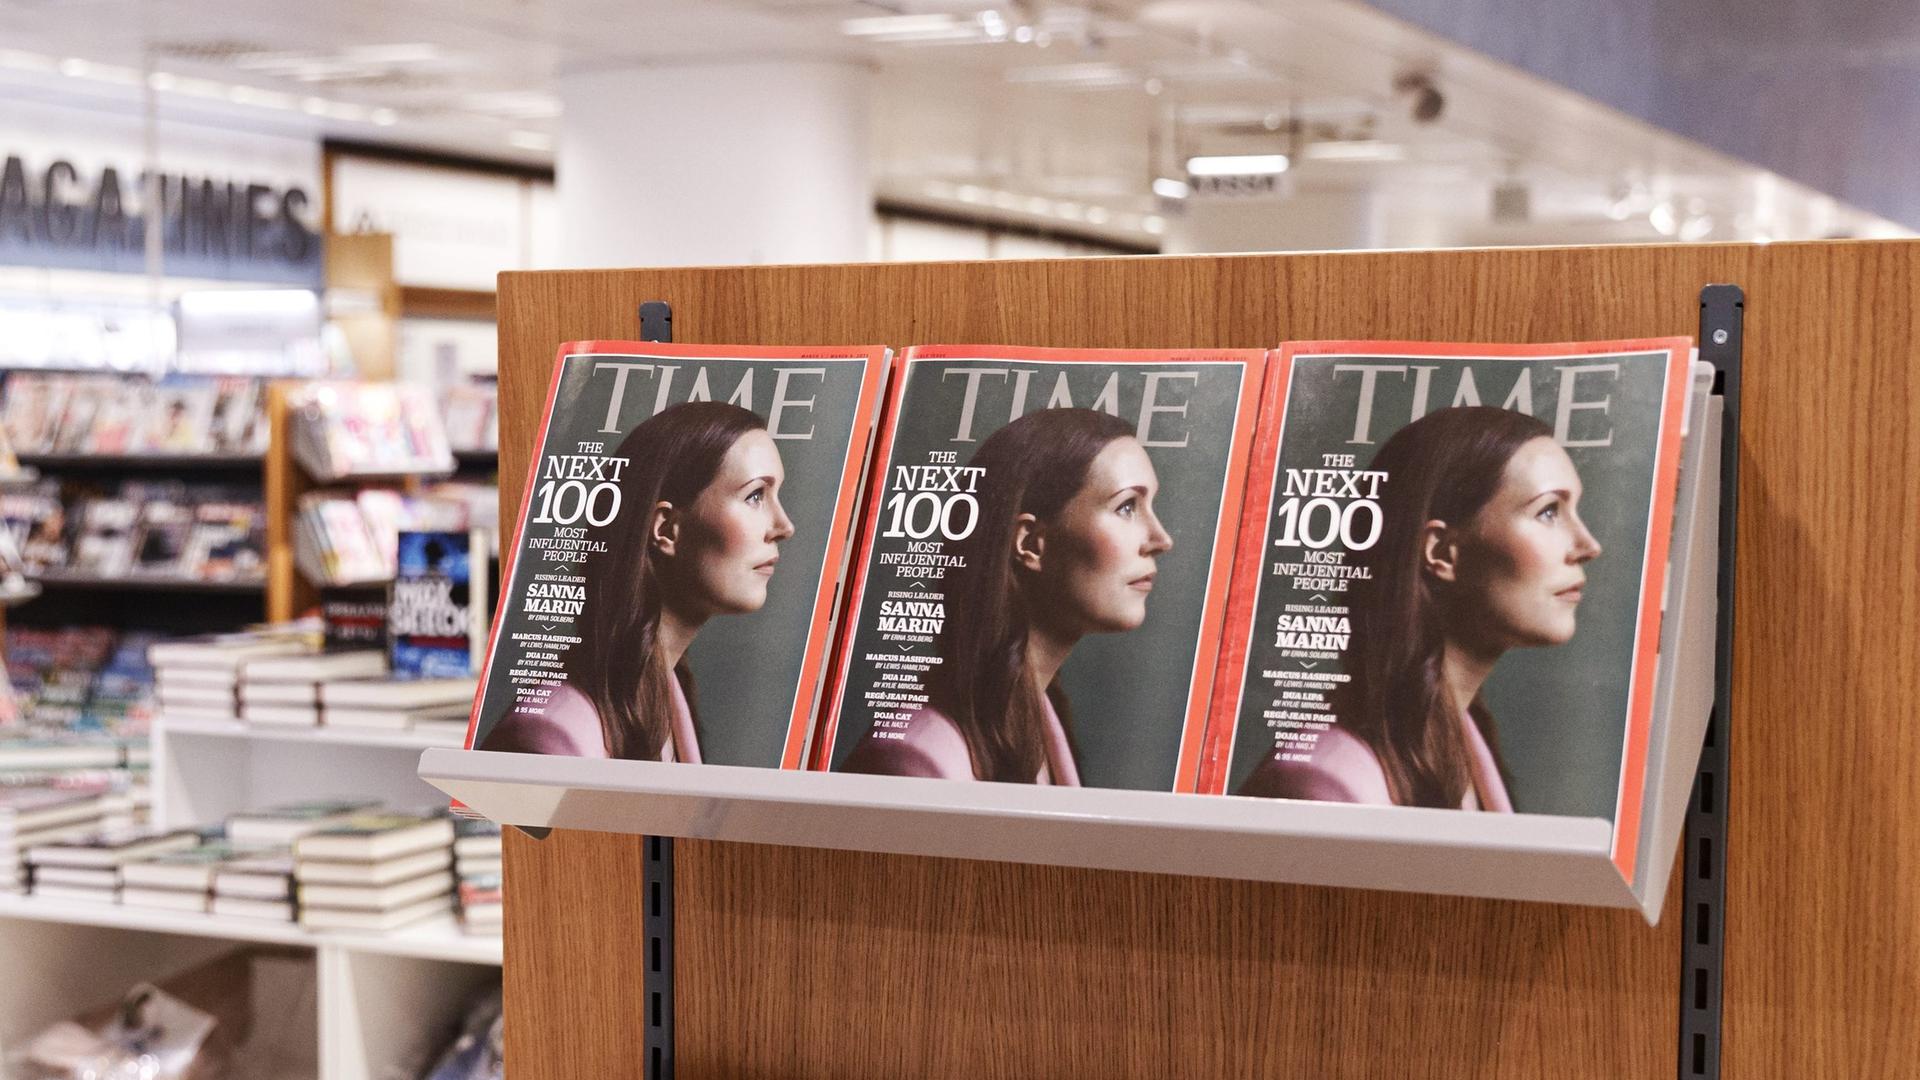 Die finnische Premierministerin Sanna Marin ist auf dem Cover des amerikanischen Time Magazines in einem gut sortierten Buchladen mehrfach in einem Holzregal zu sehen. 